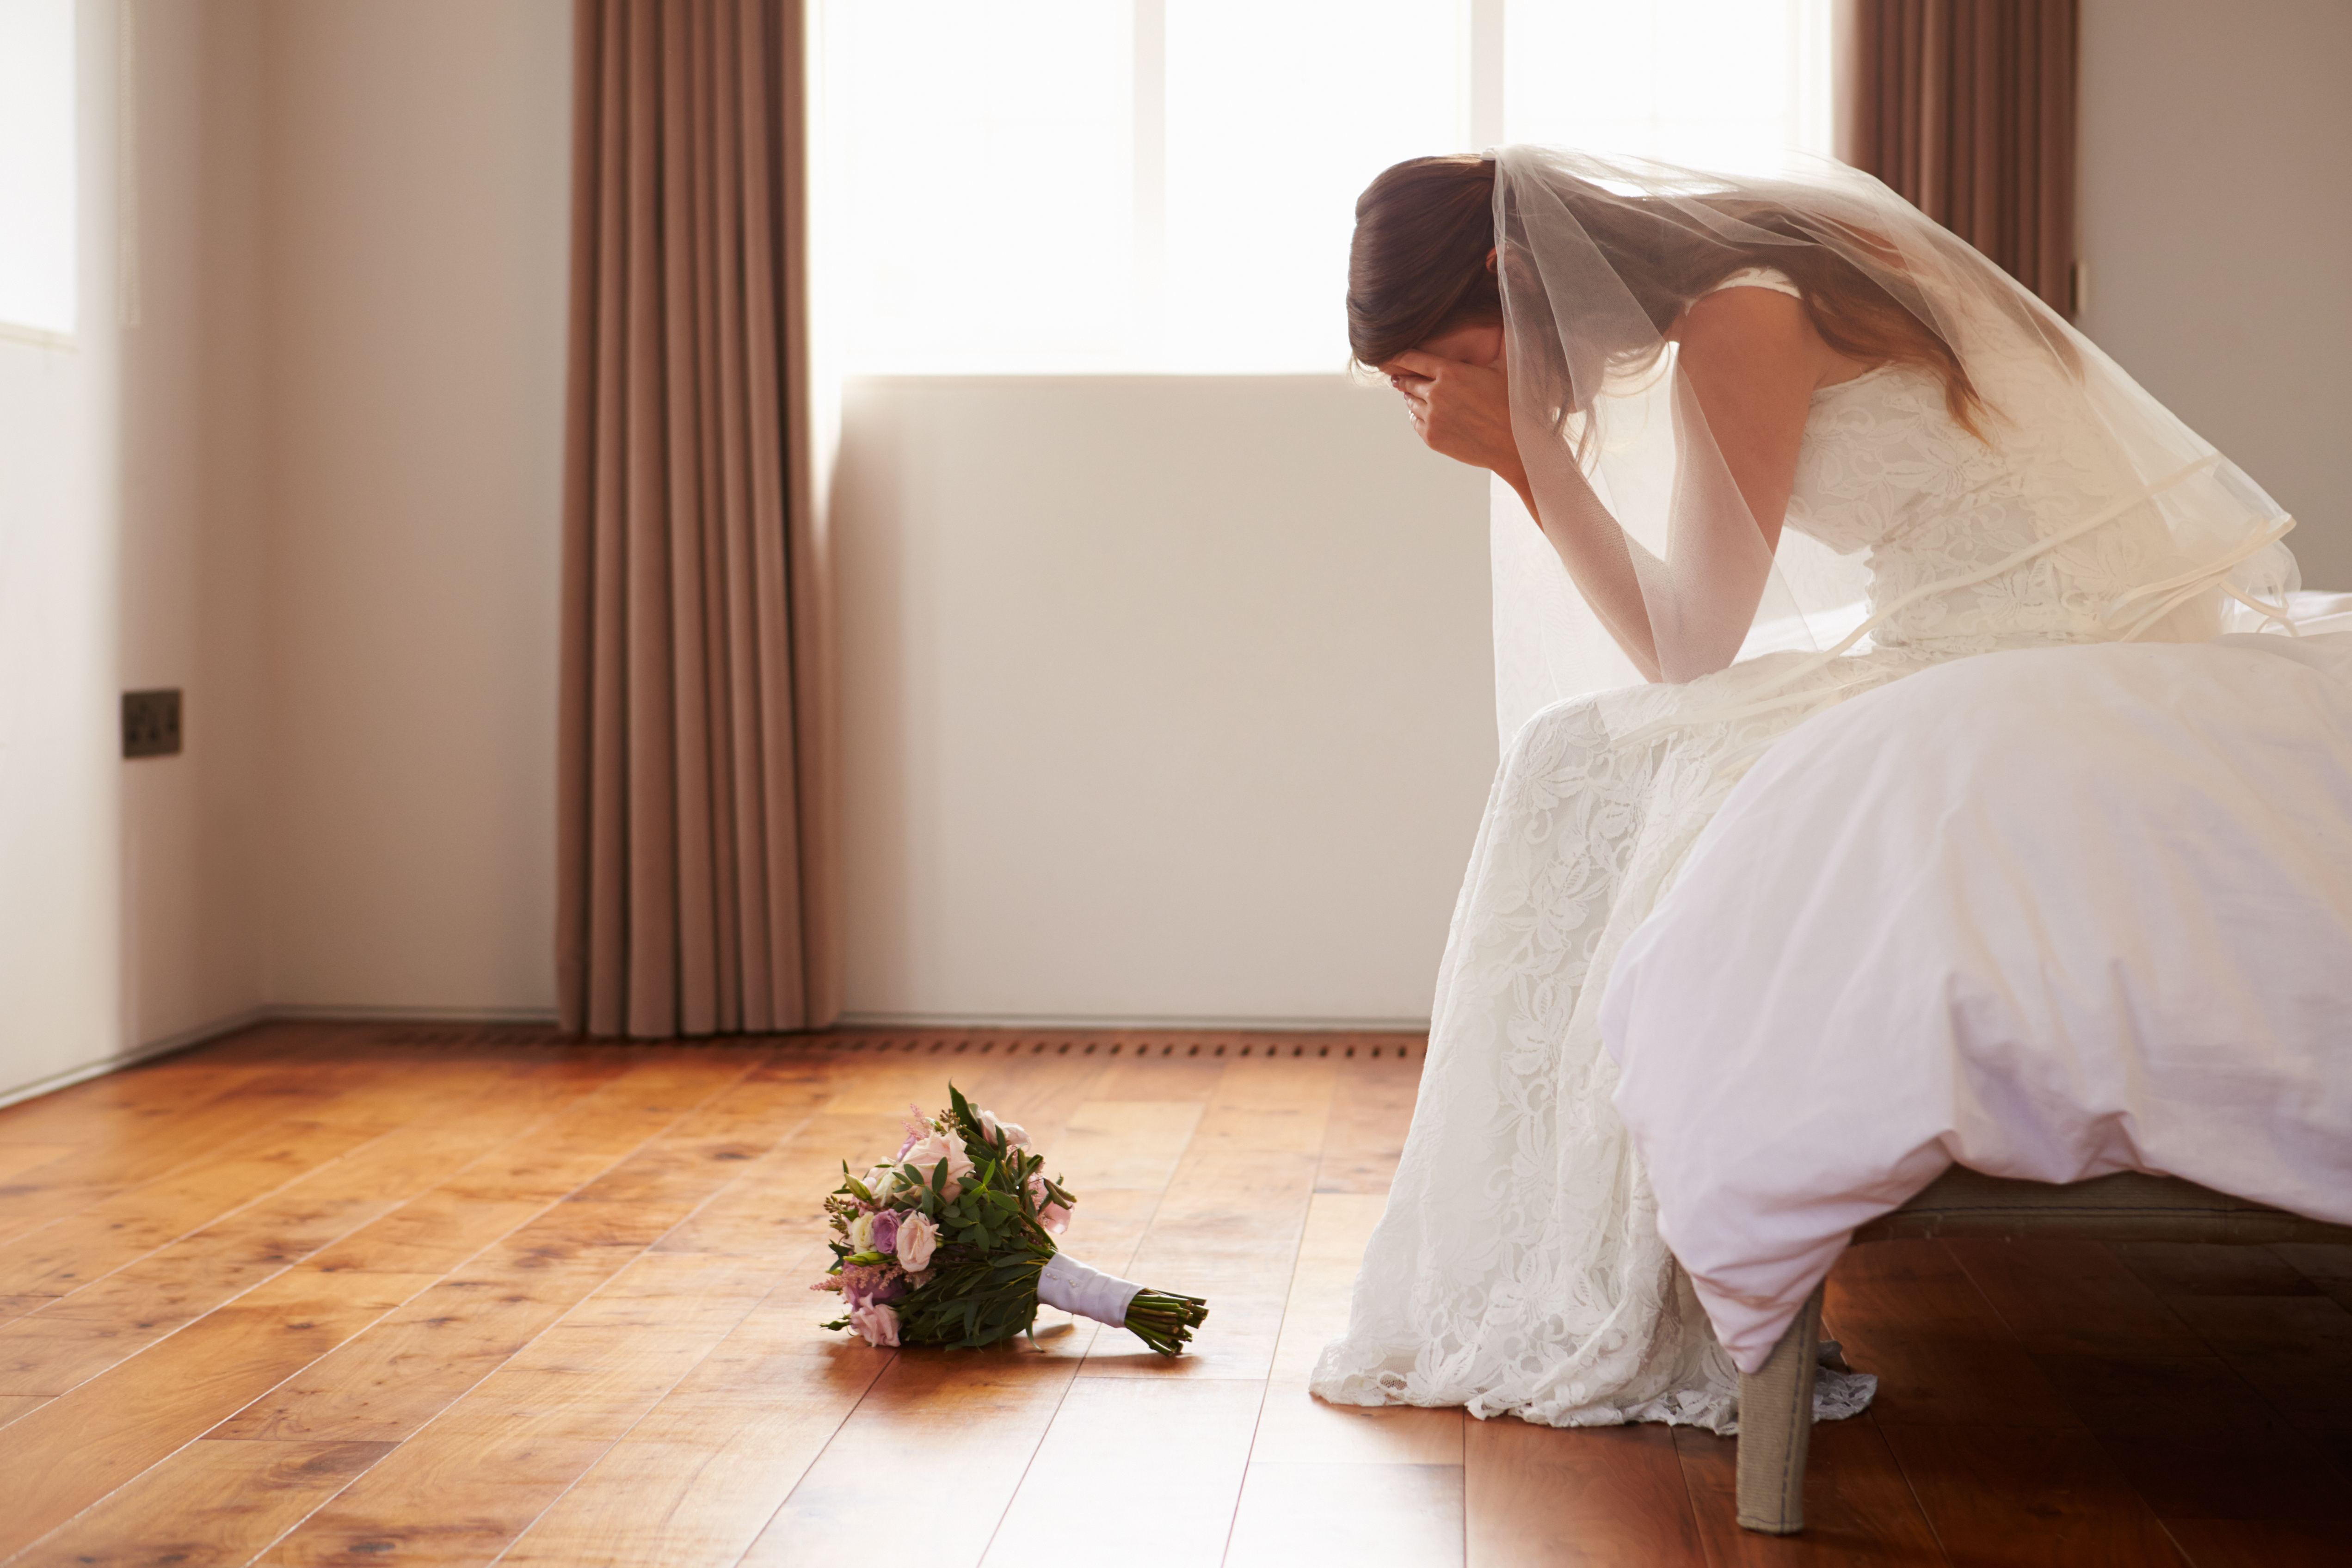 Eine traurige Braut sitzt in einem Zimmer | Quelle: Shutterstock